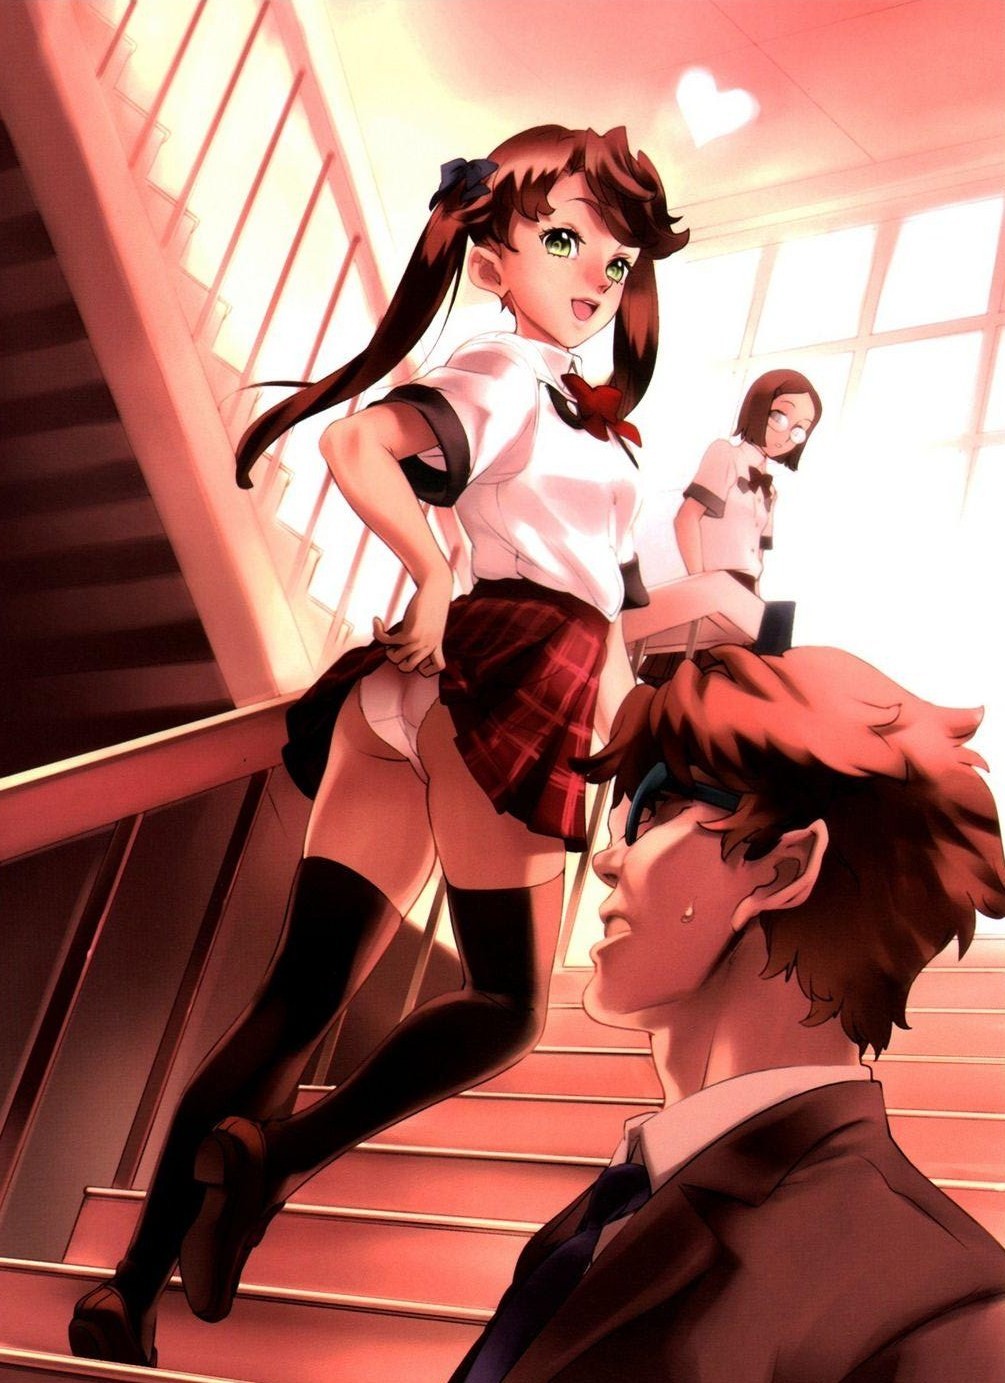 Hentai Anime School Girls - Sss multiple girls pantis butt school girls anime hentai ...